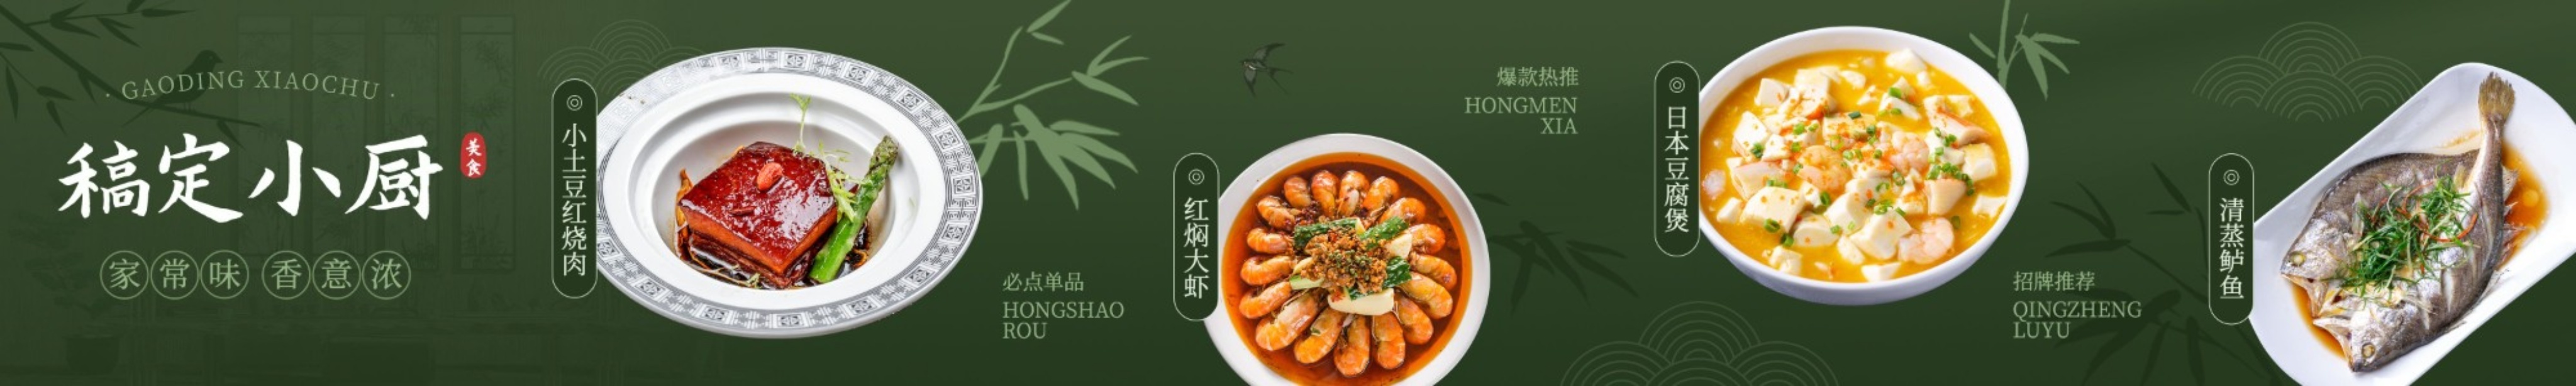 中国风竹林餐饮美食中餐抖音团购大众点评五连图